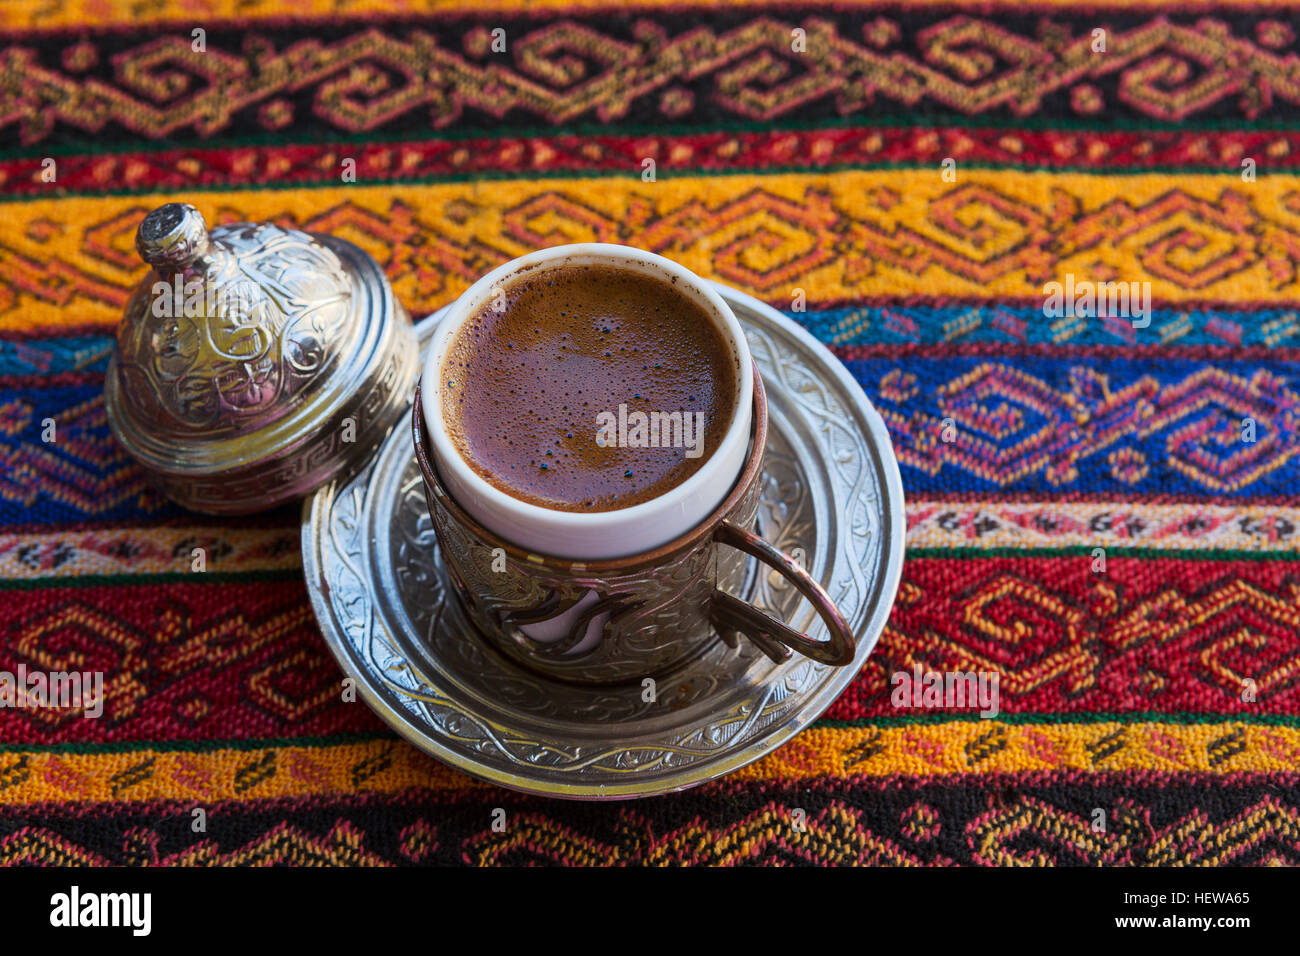 Traditionellen türkischen Kaffee in eine Keramik Kaffeetasse mit  Kupferkessel auf Tischdecke traditionelle Struktur und Muster bedeckt  Stockfotografie - Alamy